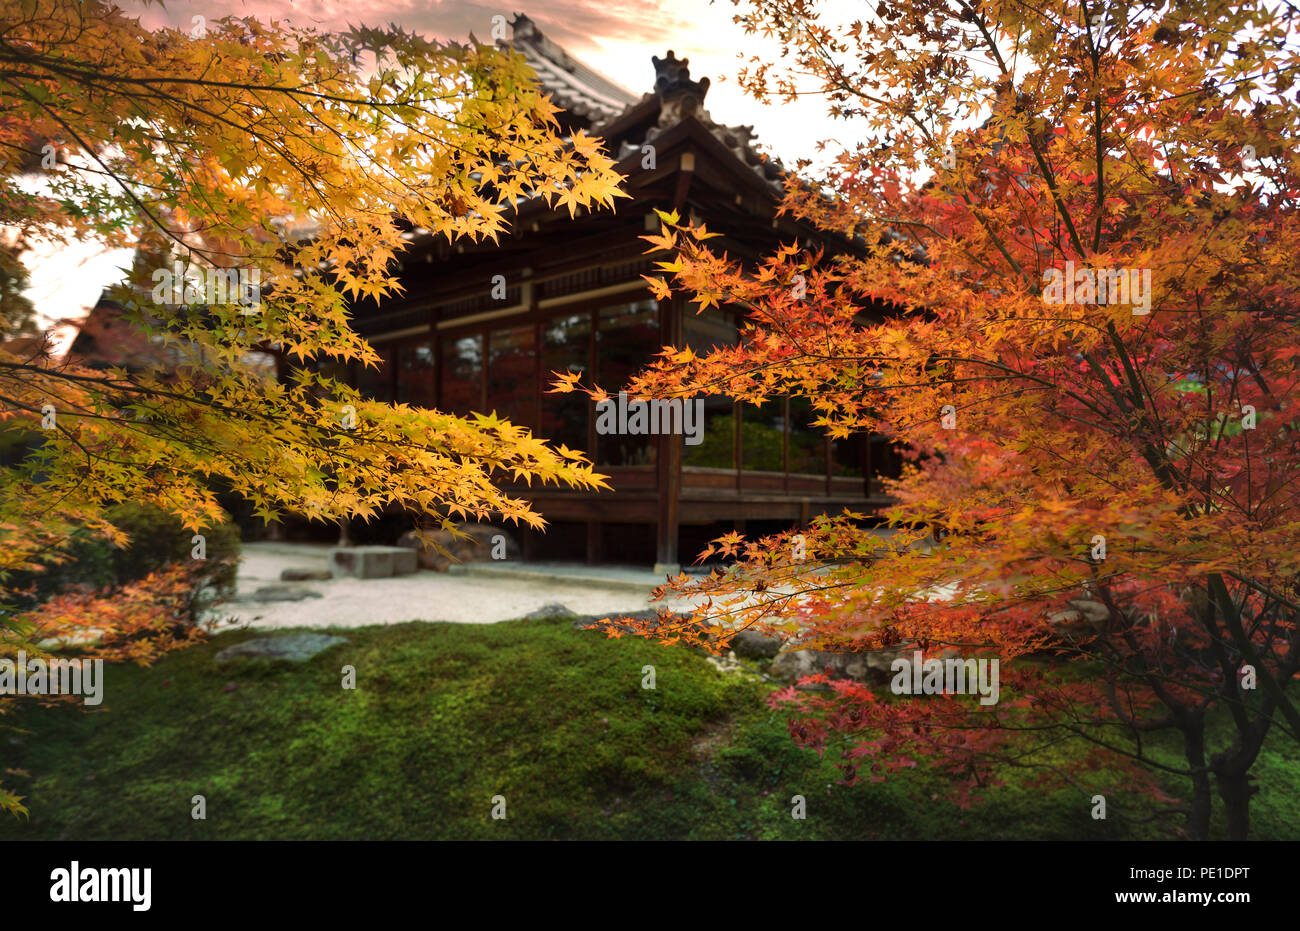 Tenju - einen japanischen Tempel Haupthalle im schönen Herbst Landschaft eines Tempels Garten. Nanzen-ji-Komplex in Sakyo-ku, Kyoto, Japan 2017 Stockfoto